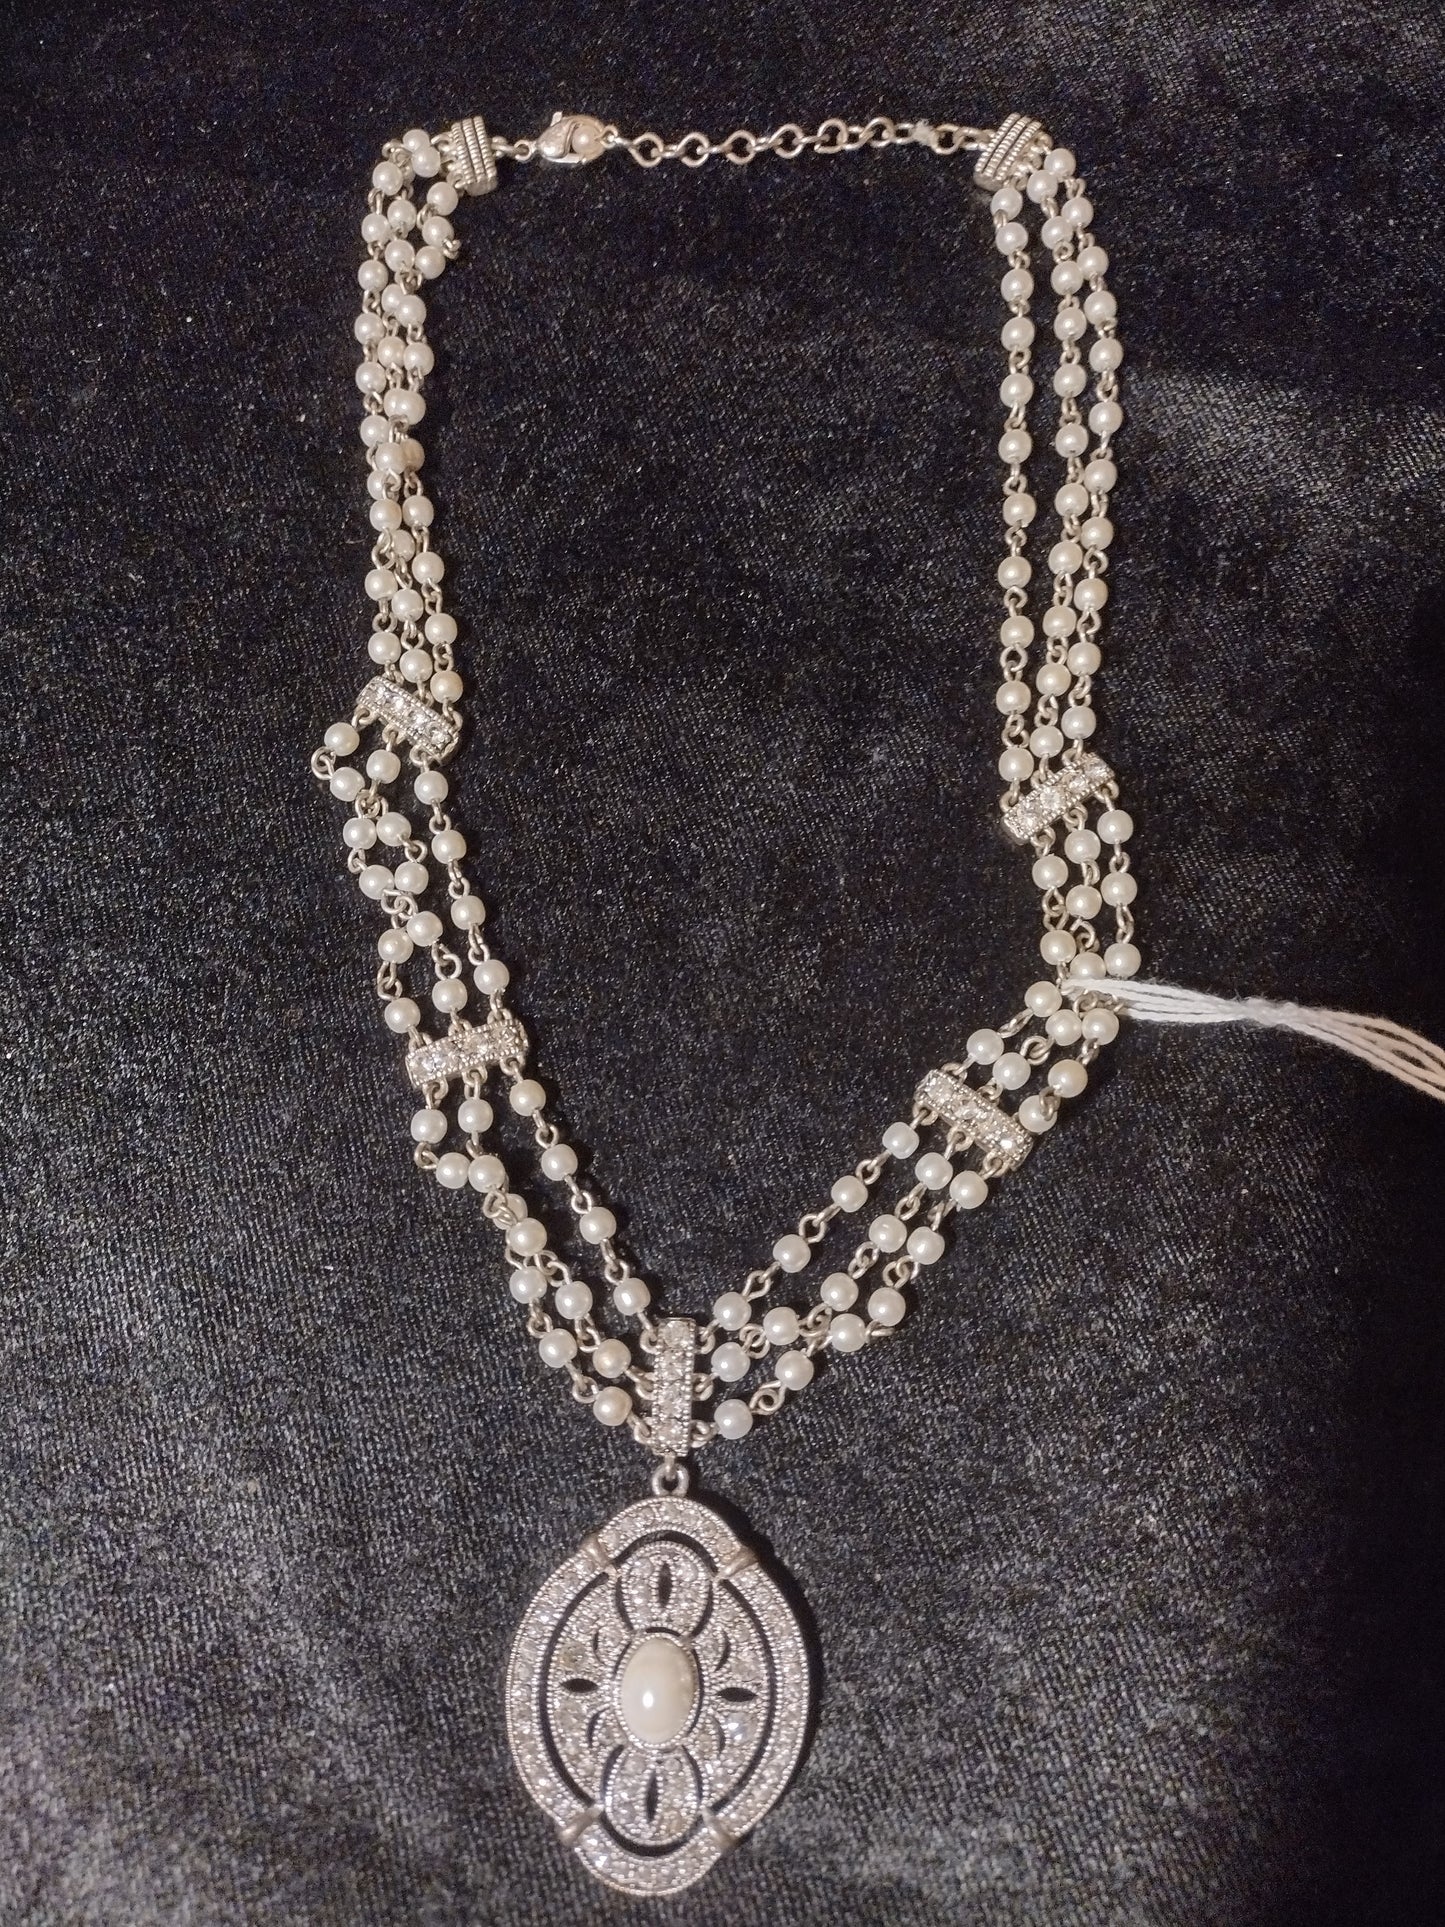 Women's pearl emblem necklace